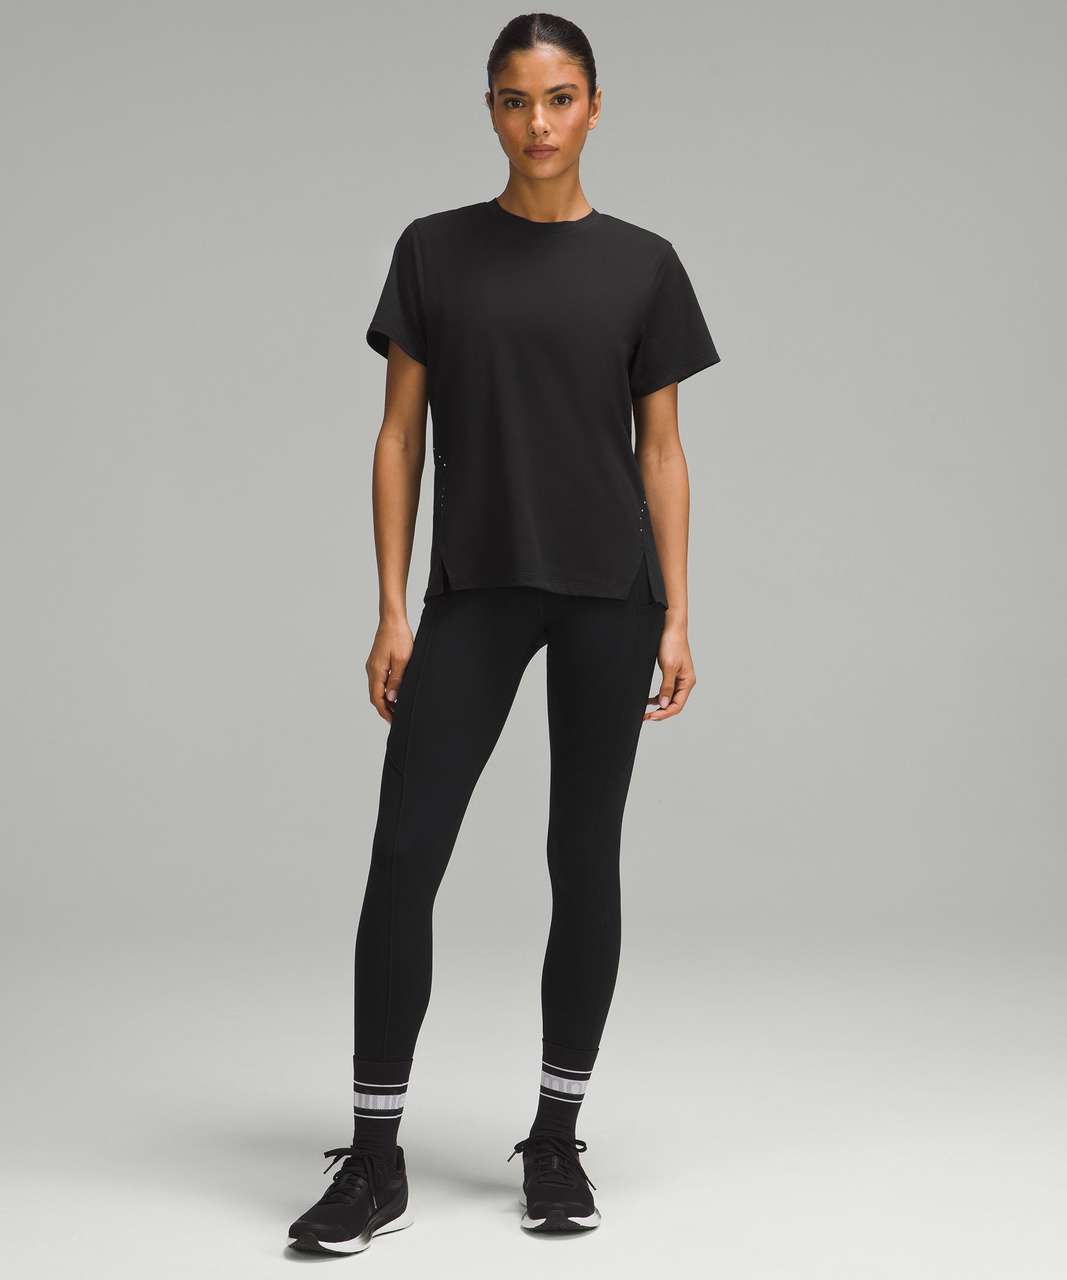 Lululemon Relaxed-Fit Running T-Shirt - Black